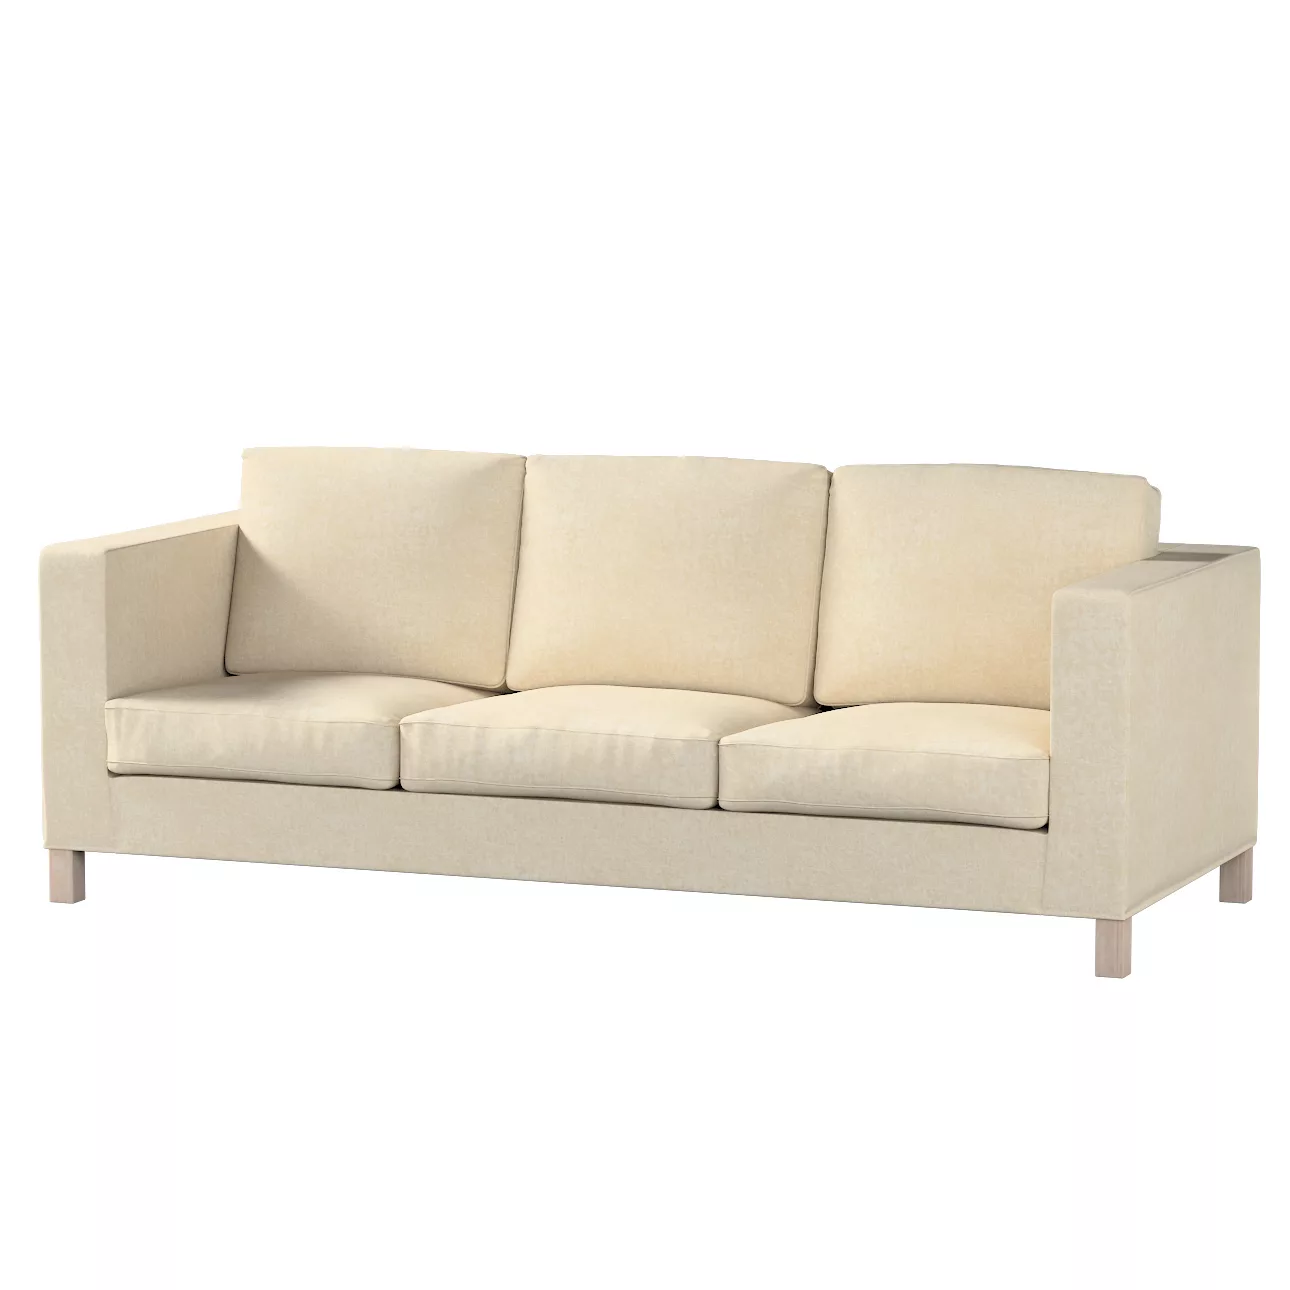 Bezug für Karlanda 3-Sitzer Sofa nicht ausklappbar, kurz, grau-beige, Bezug günstig online kaufen